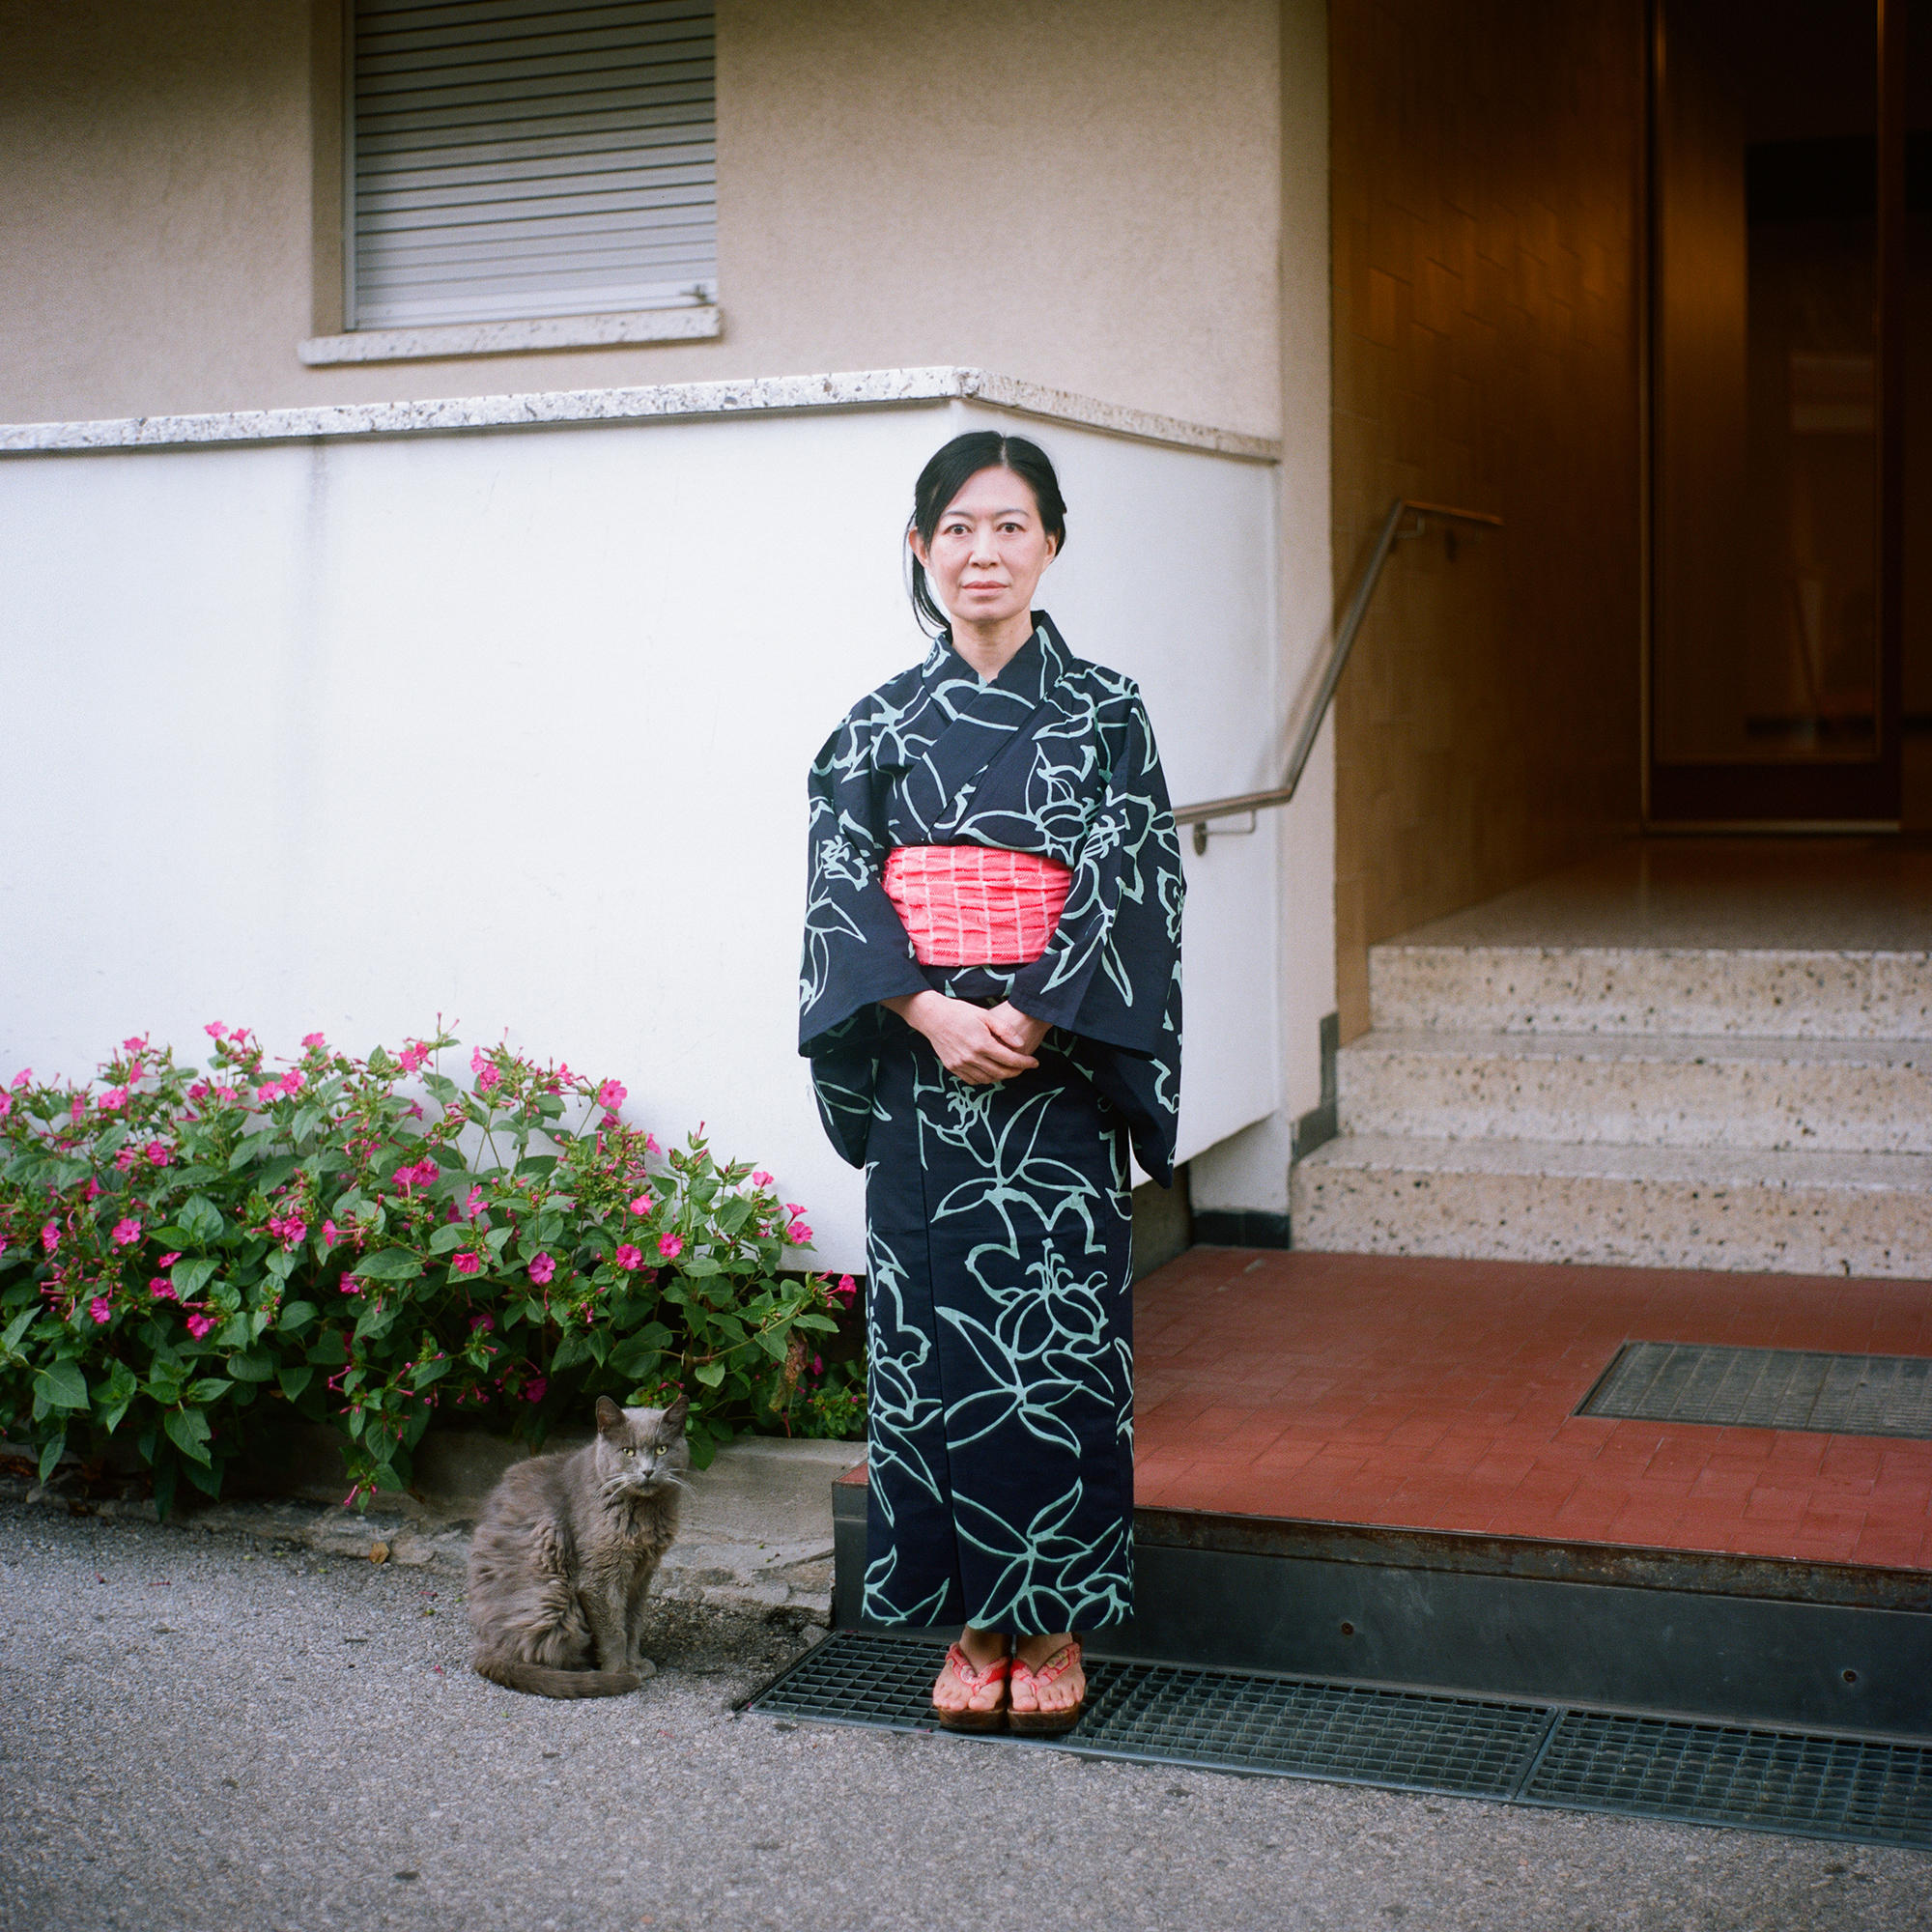 سيدة يابانية بلباسها التقليدي